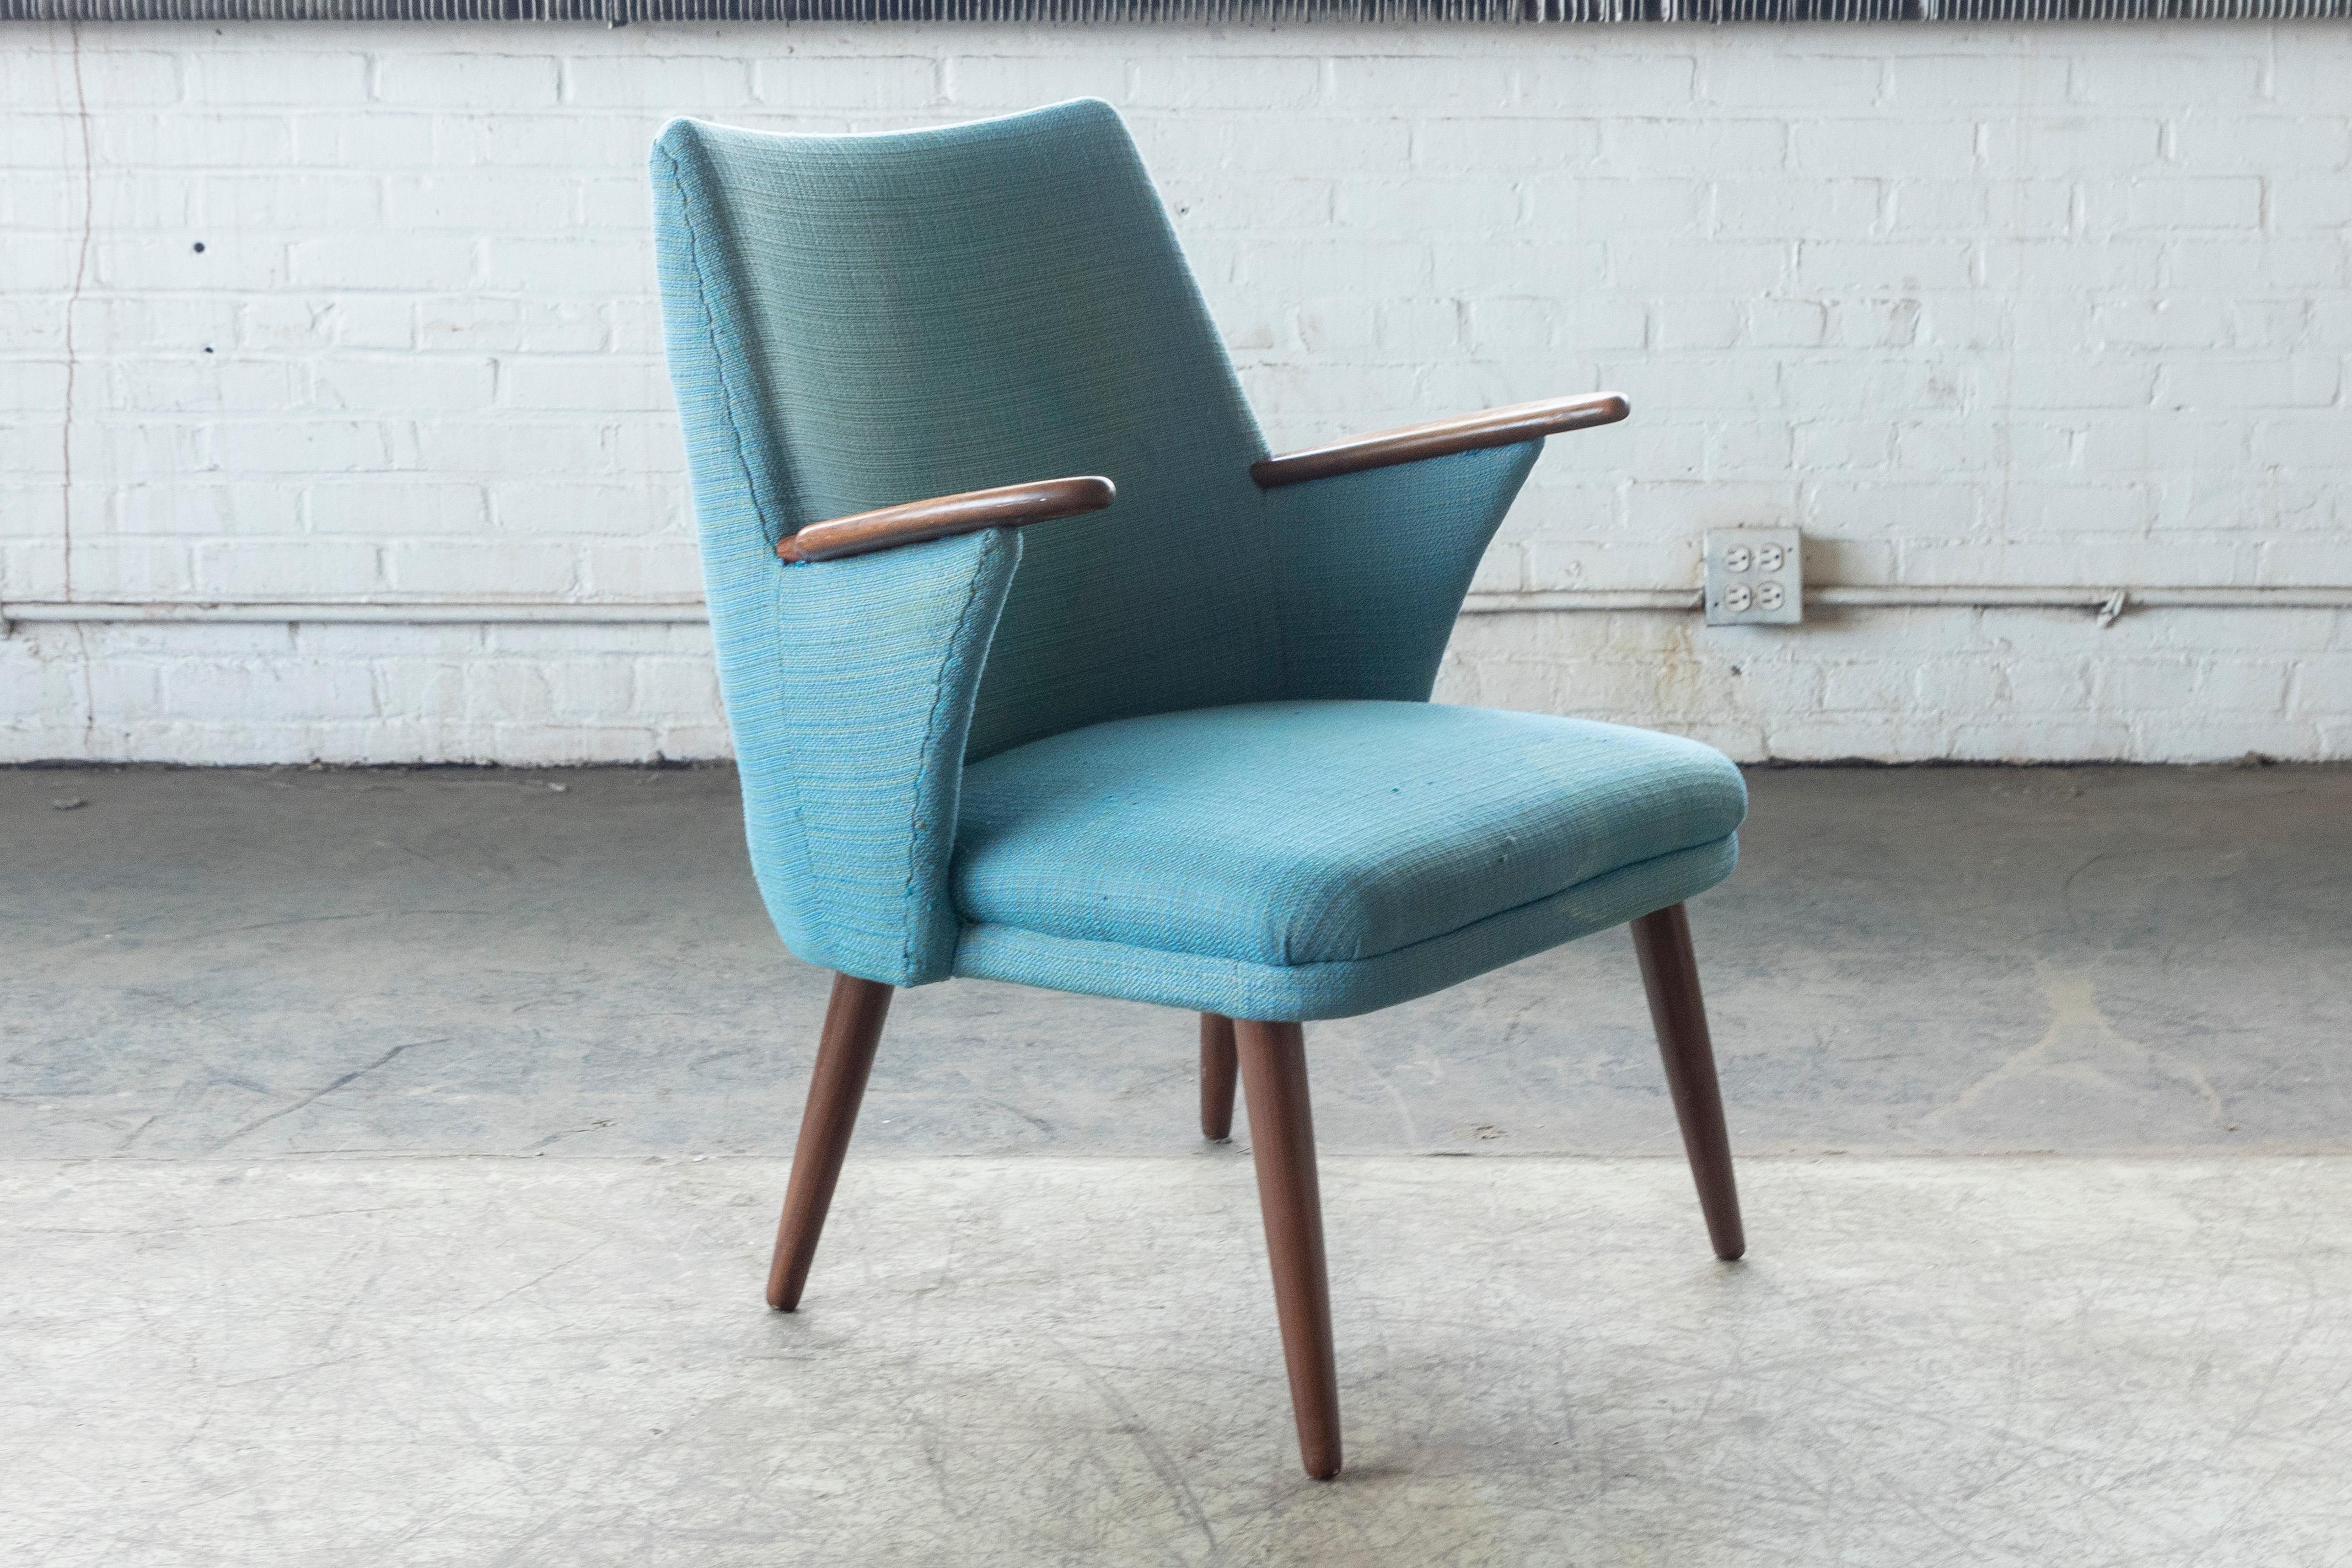 Schöner leichter und vielseitiger Sessel im Stil von Kurt Olsen. Ideal für kleinere Räume, in denen der Platz knapp ist und Sie den Stuhl verschieben können möchten. Der Rahmen und die Armlehne sind aus Teakholz mit schöner Farbe und Maserung. Der